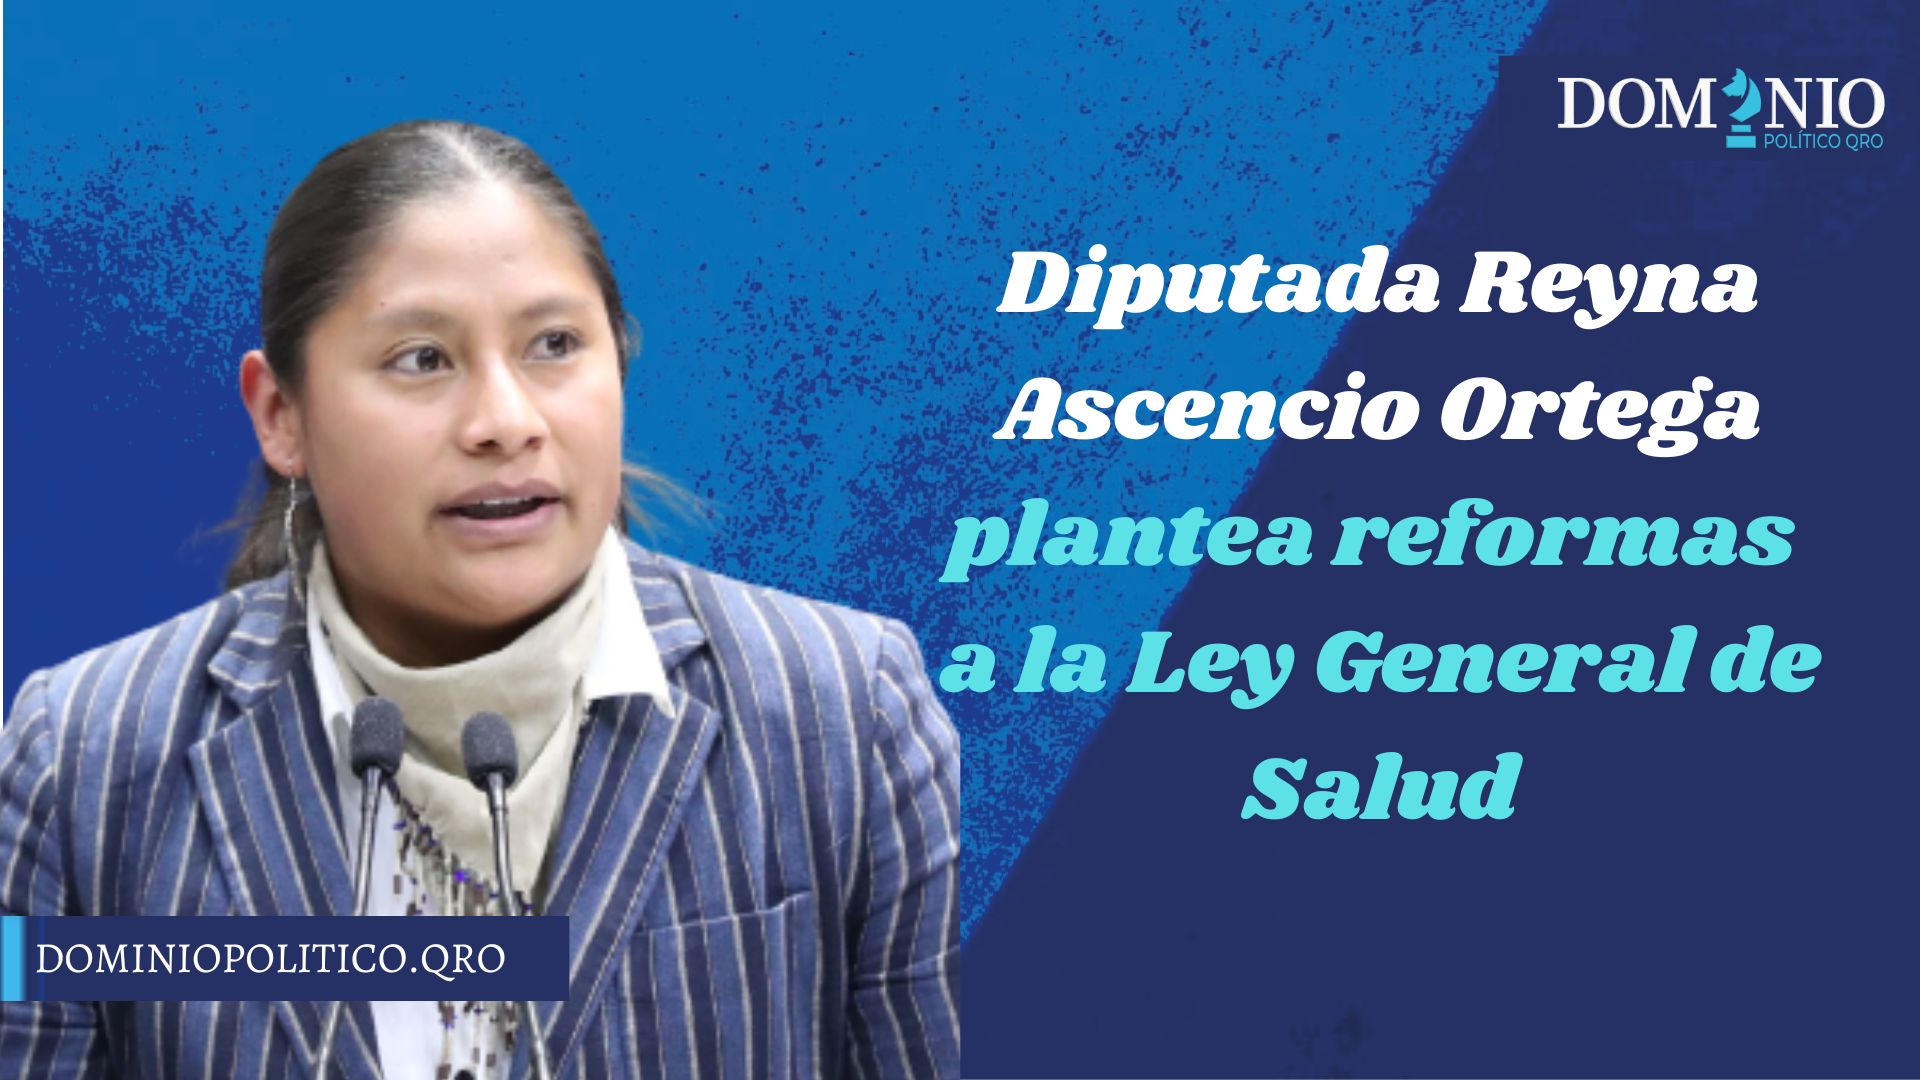 Diputada Reyna Ascencio Ortega plantea reformas a la Ley General de Salud